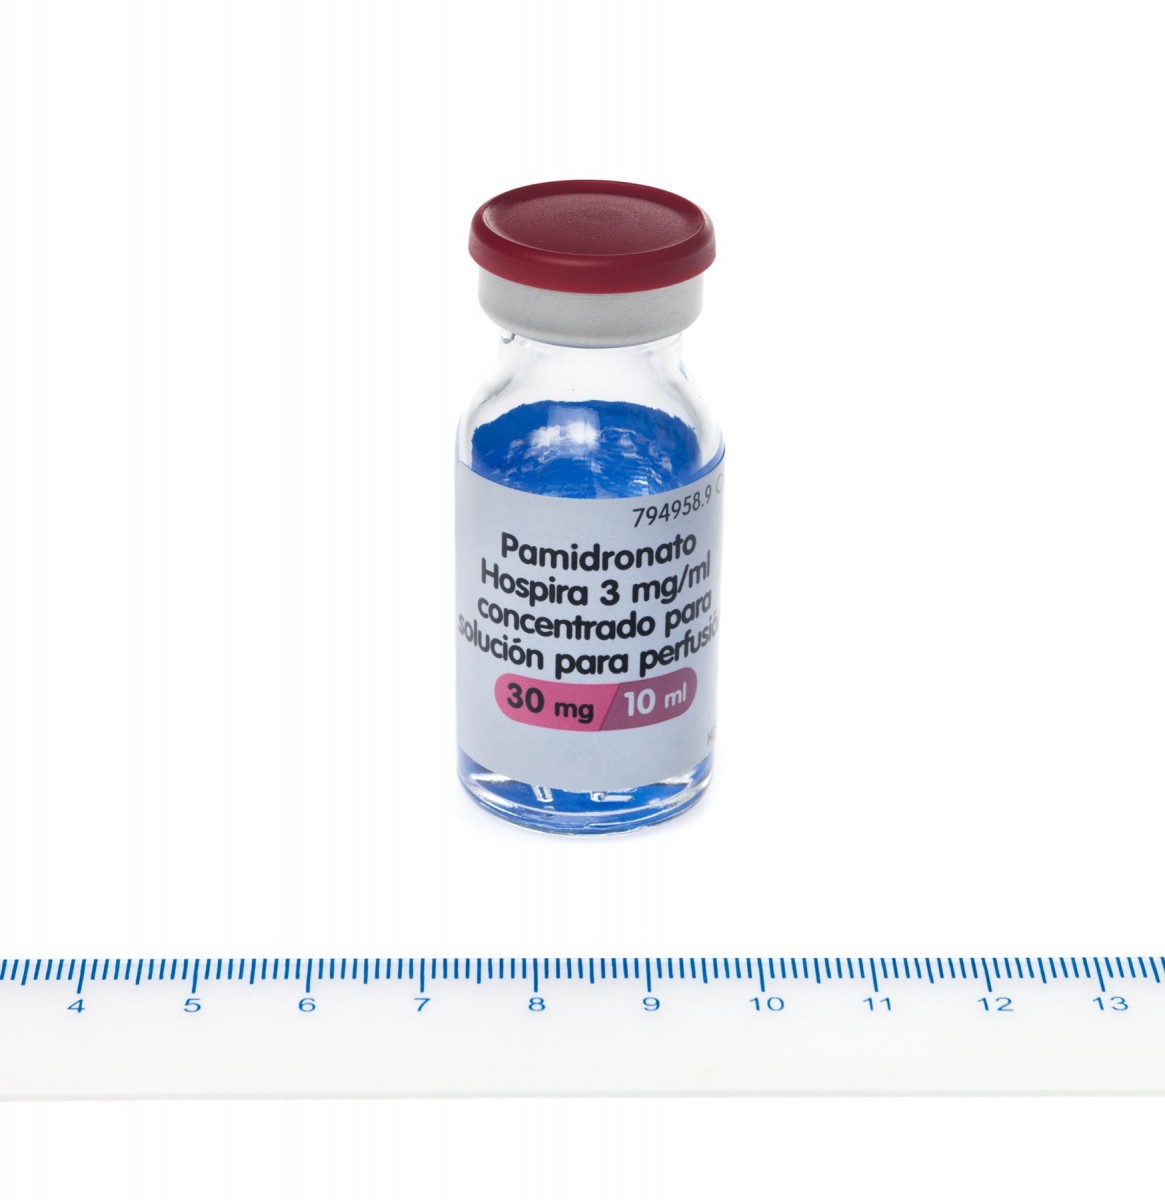 PAMIDRONATO HOSPIRA 3 mg/ml CONCENTRADO PARA SOLUCION PARA PERFUSION , 1 vial de 10 ml fotografía de la forma farmacéutica.